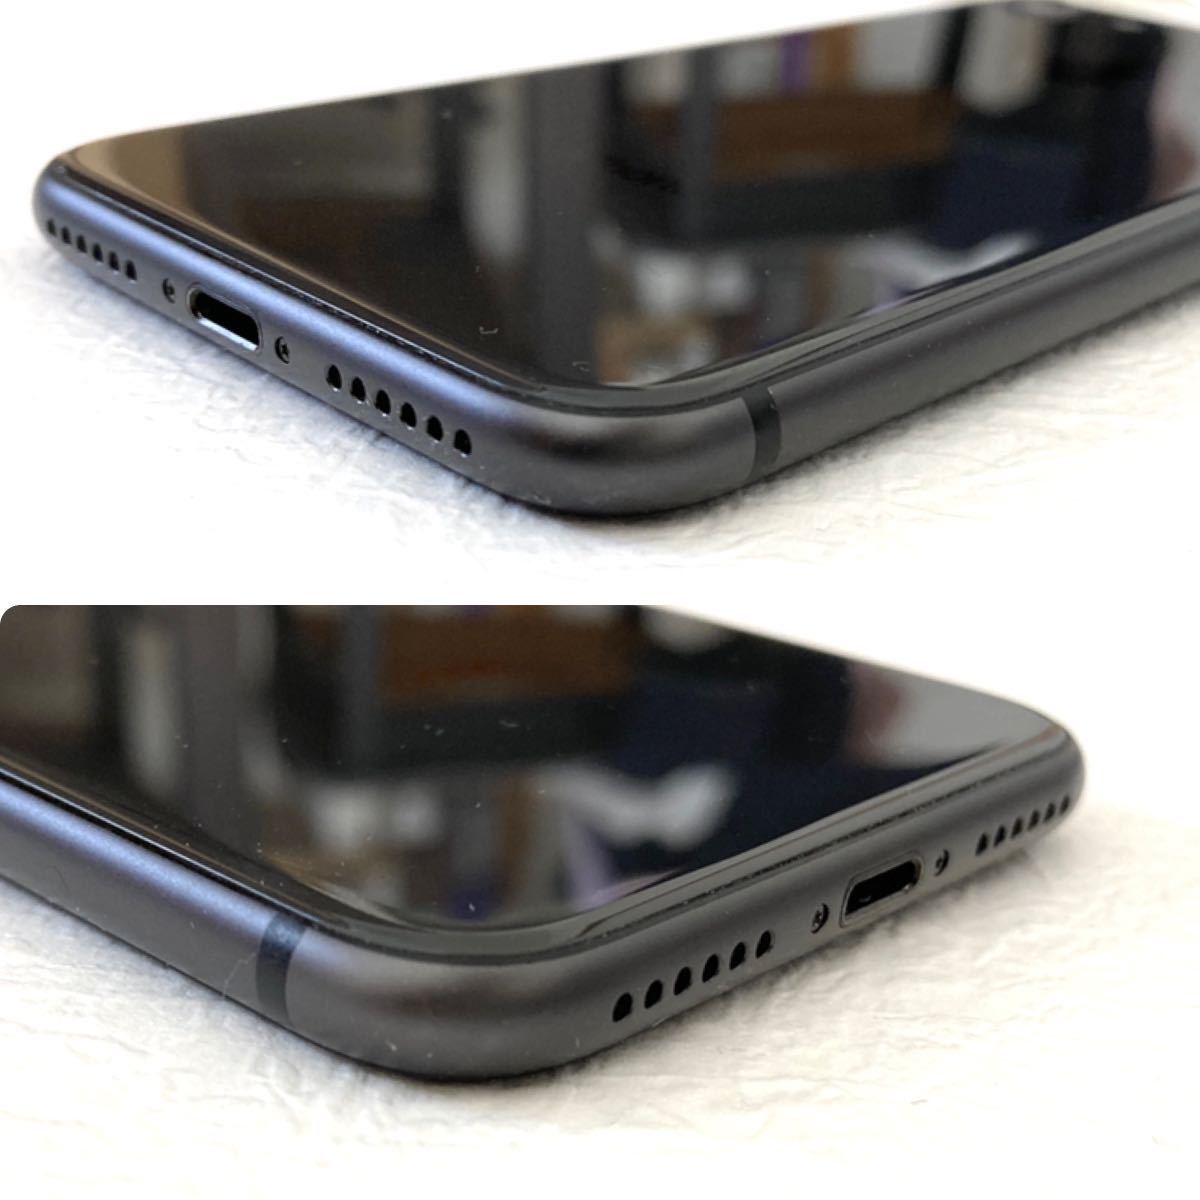 超美品 iPhone8 64GBスペースグレイ 新品液晶画面&バッテリー残量100